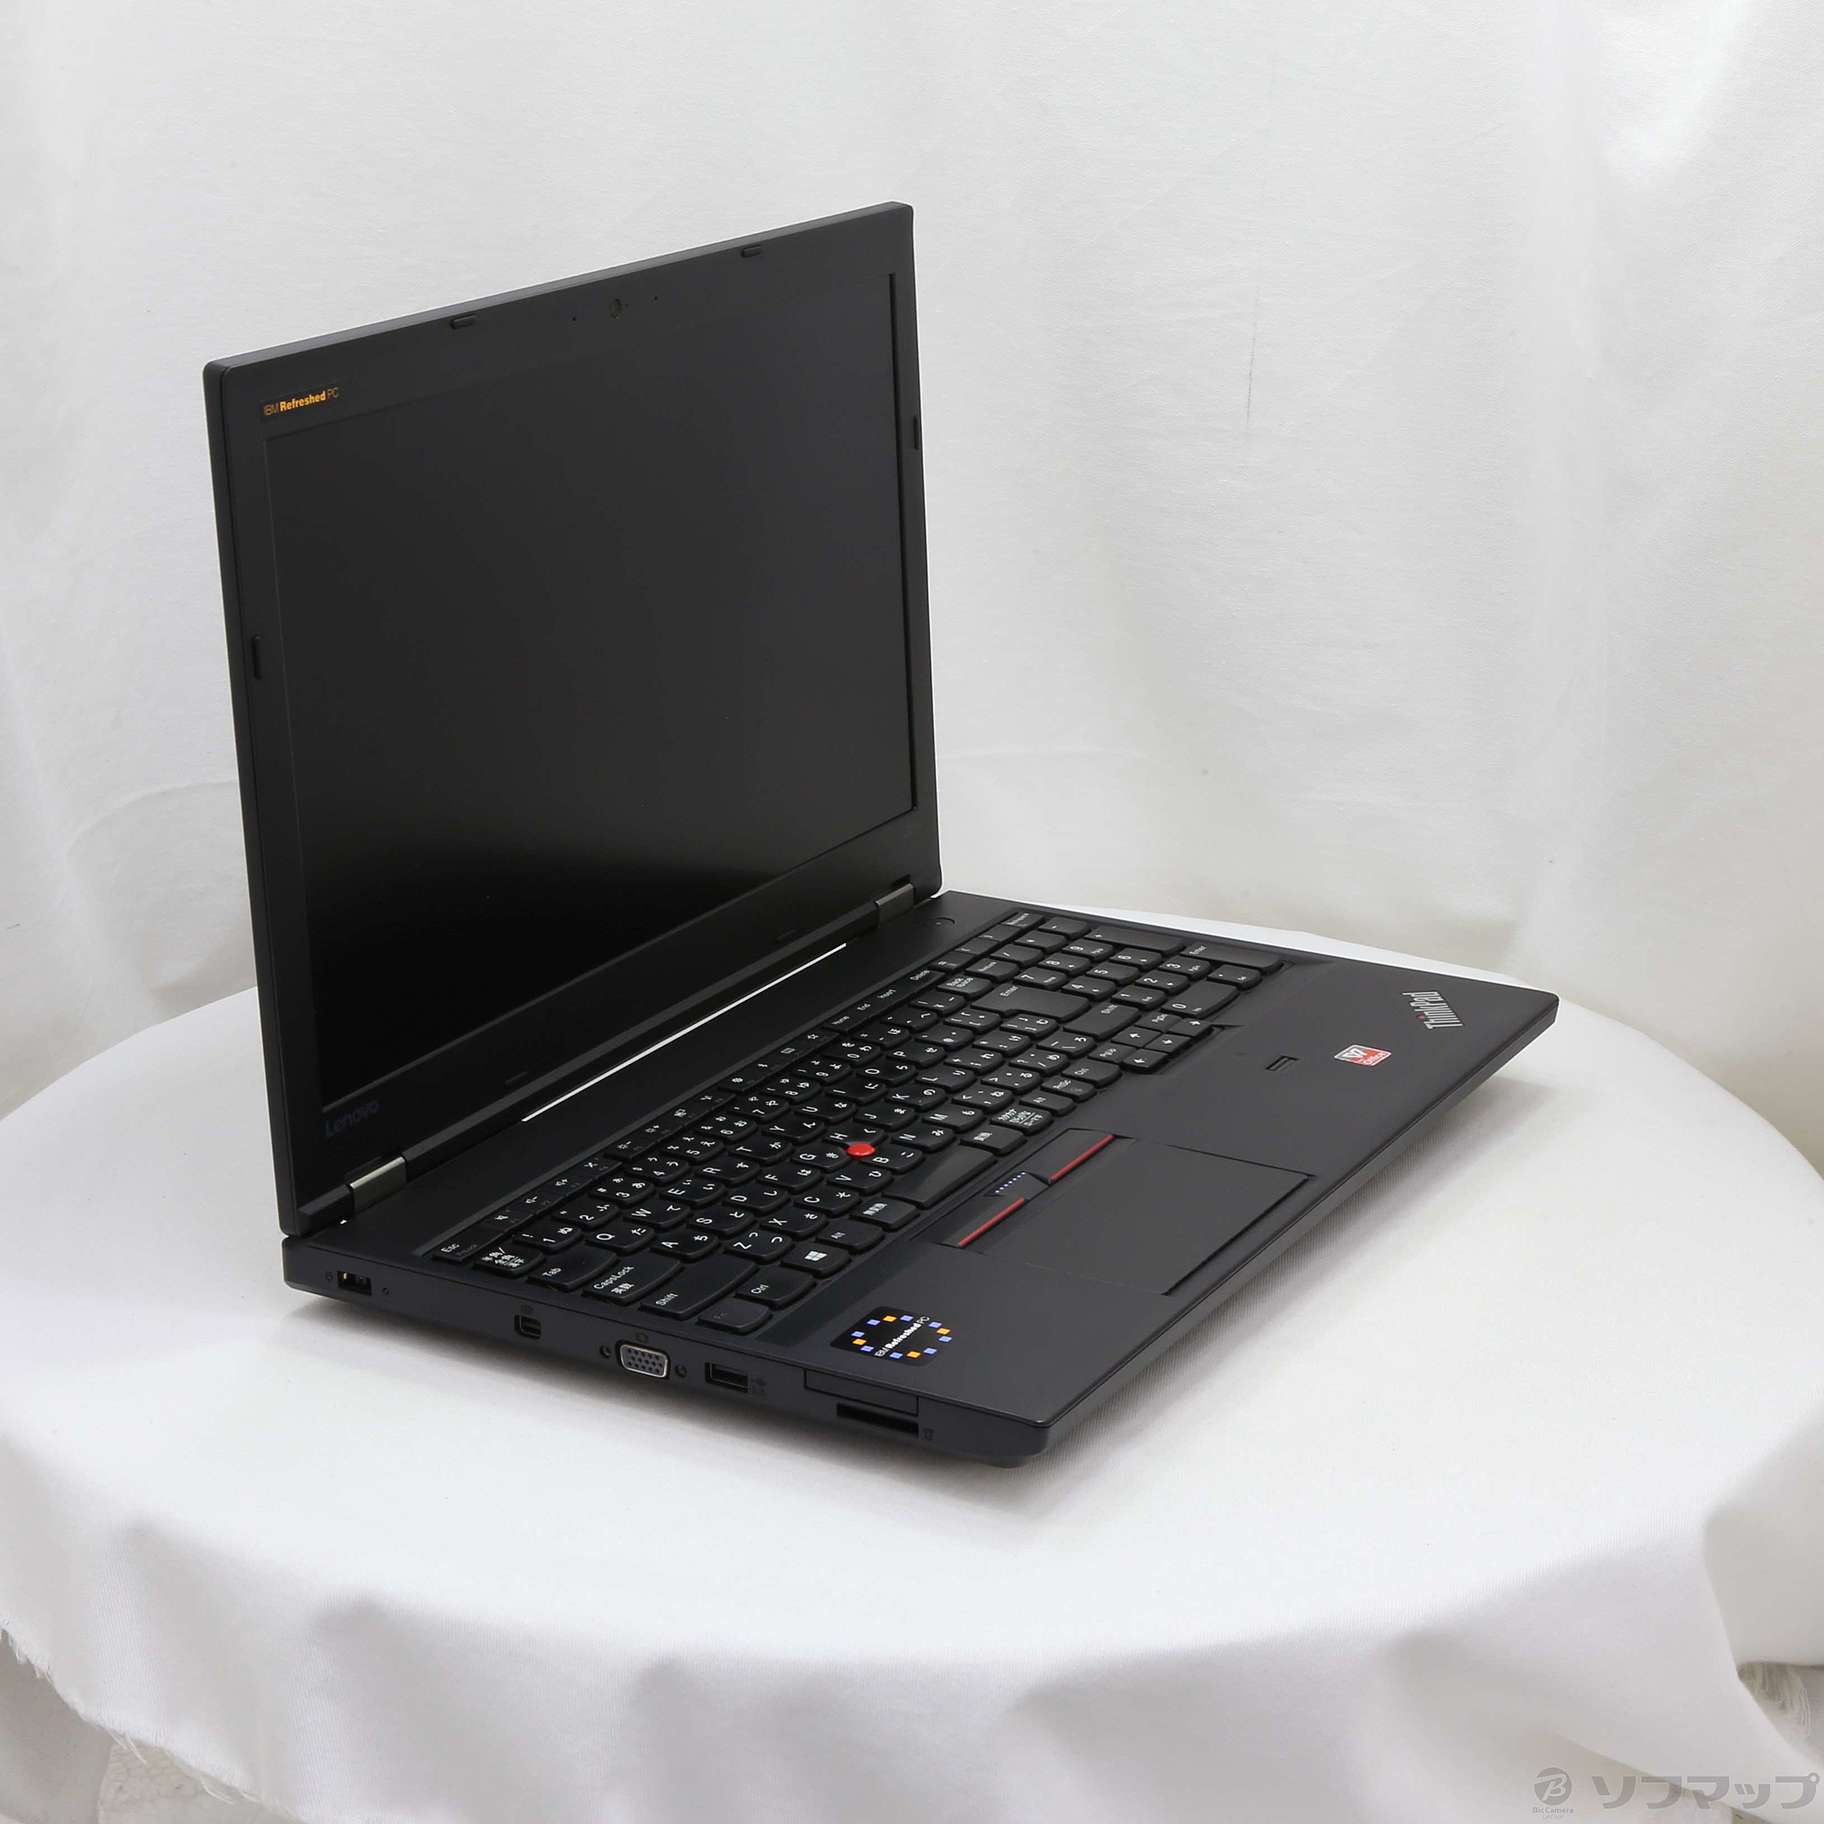 セール対象品 ThinkPad L570 20J9S0GM00 〔IBM Refreshed PC〕 〔Windows 10〕